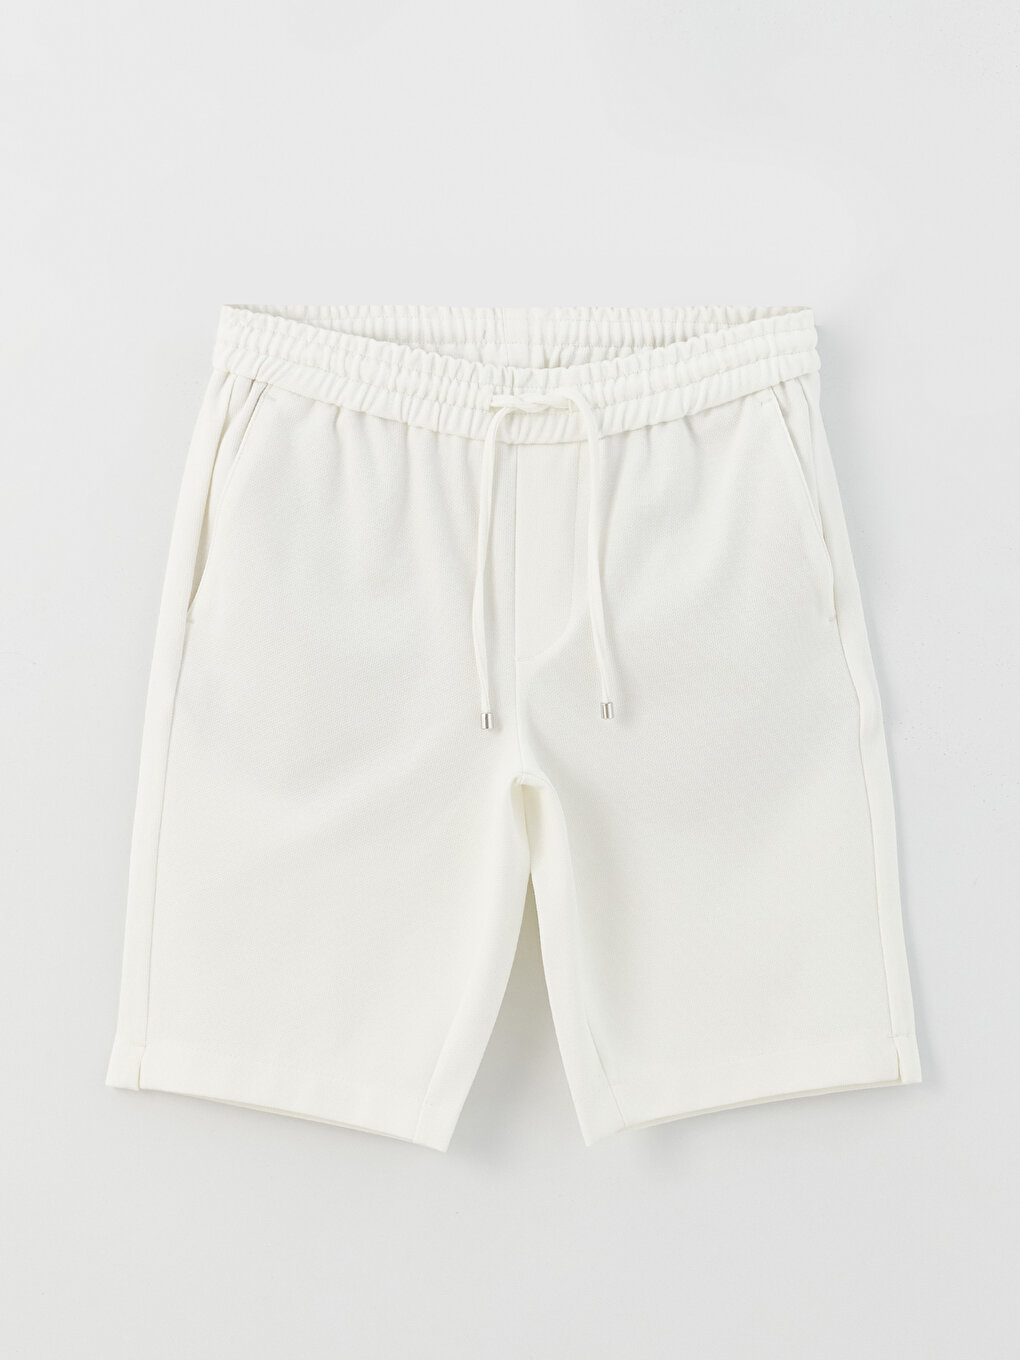 Slim Fit Binding Detail Men's Shorts -S39059Z8-V33 - S39059Z8-V33 - LC ...